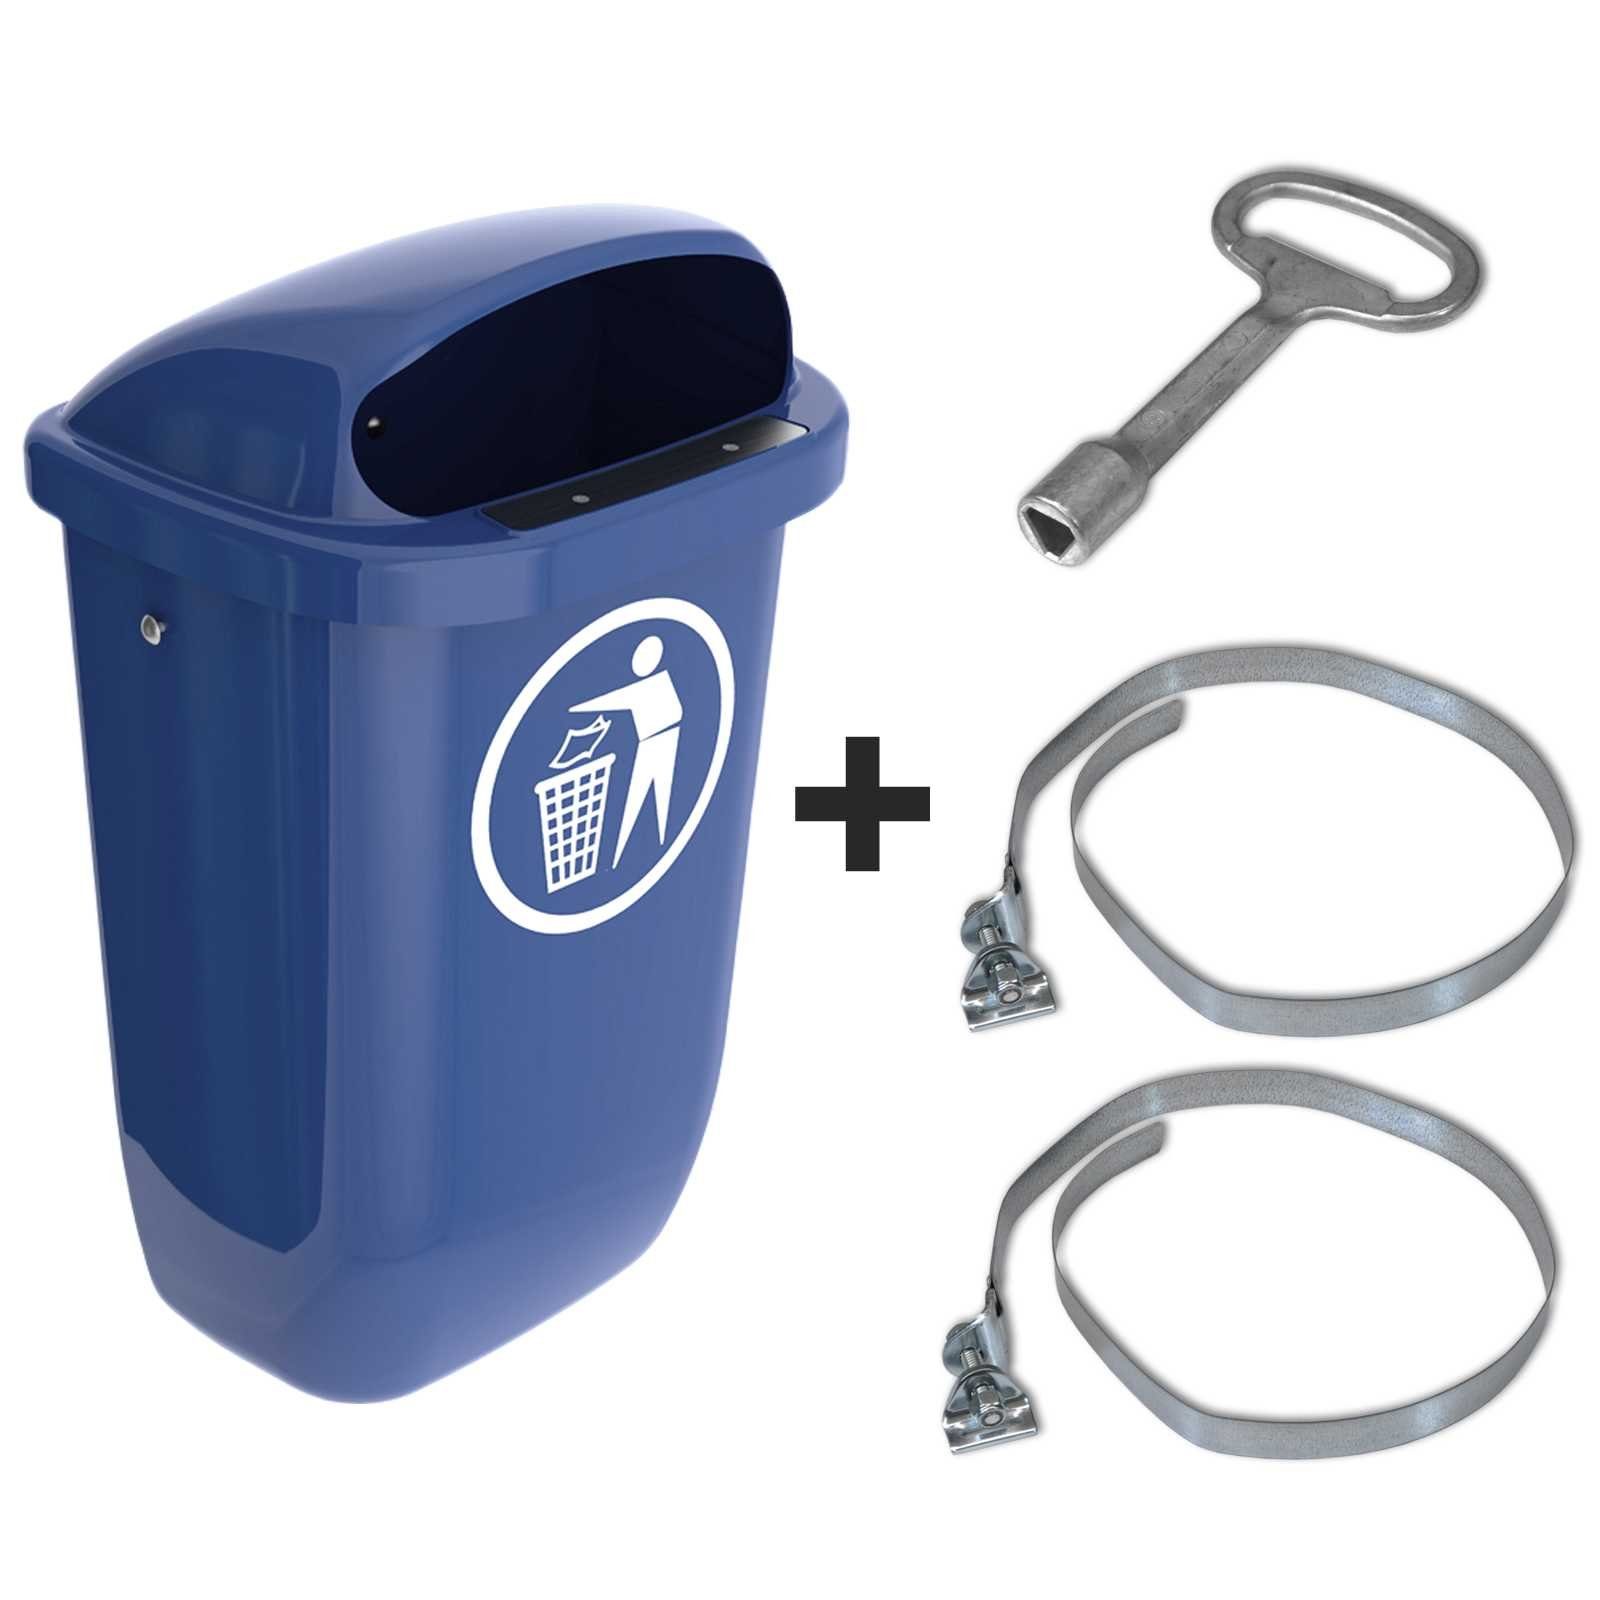 Abfallbehälter Set mit Mülleimer Papierkorb Regenhaube Sulo blau Original SULO